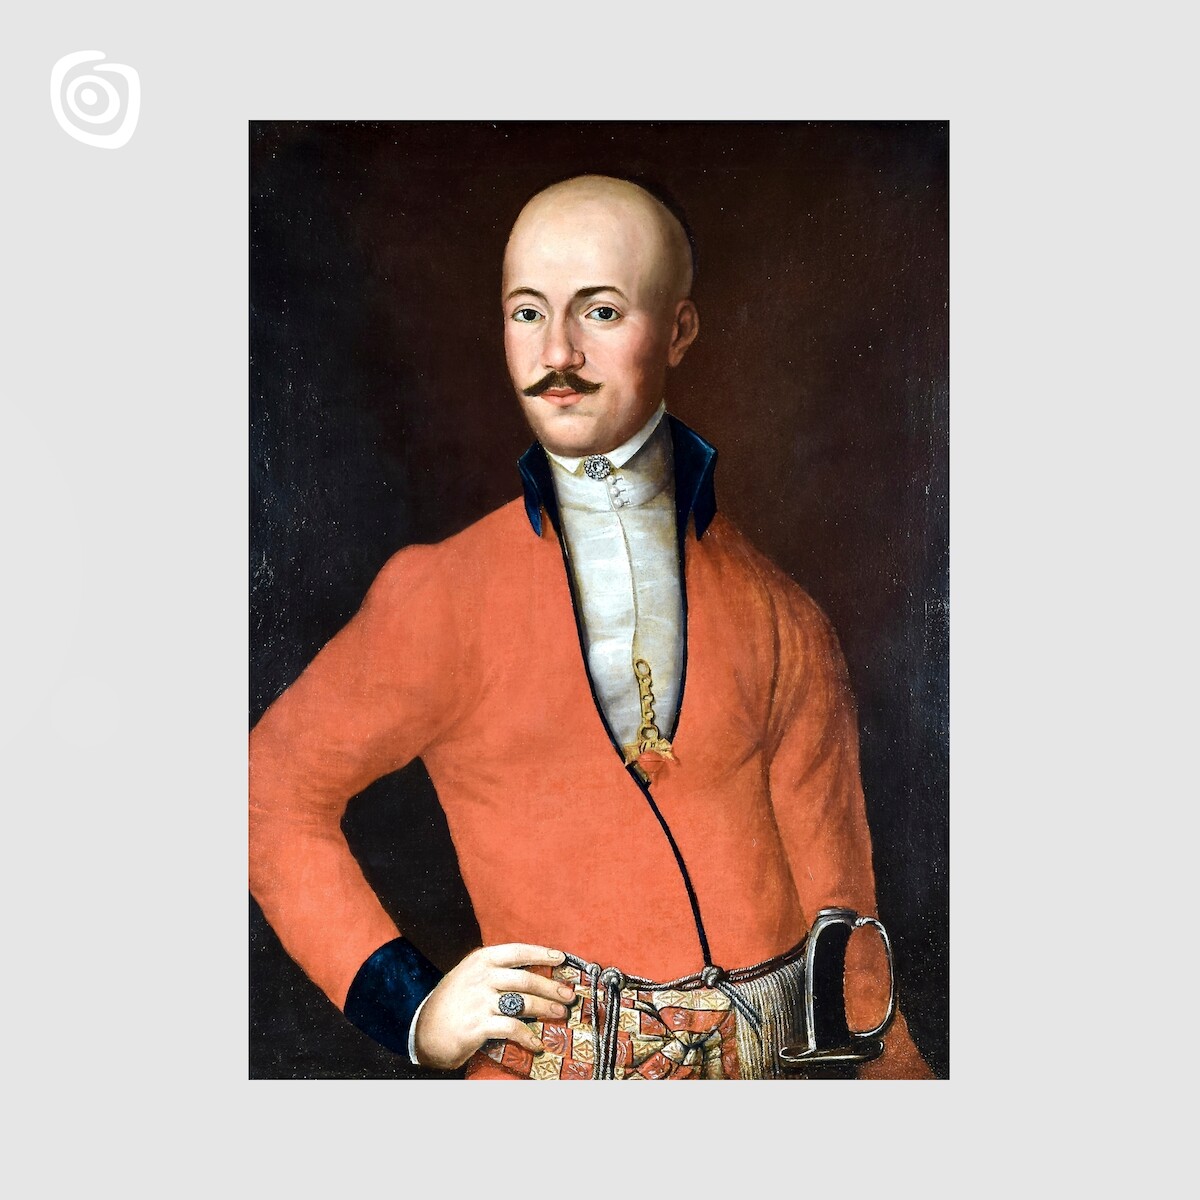 Portret Jakuba Chełmickiego, miejscowość nieznana, XVIII - XIX w.